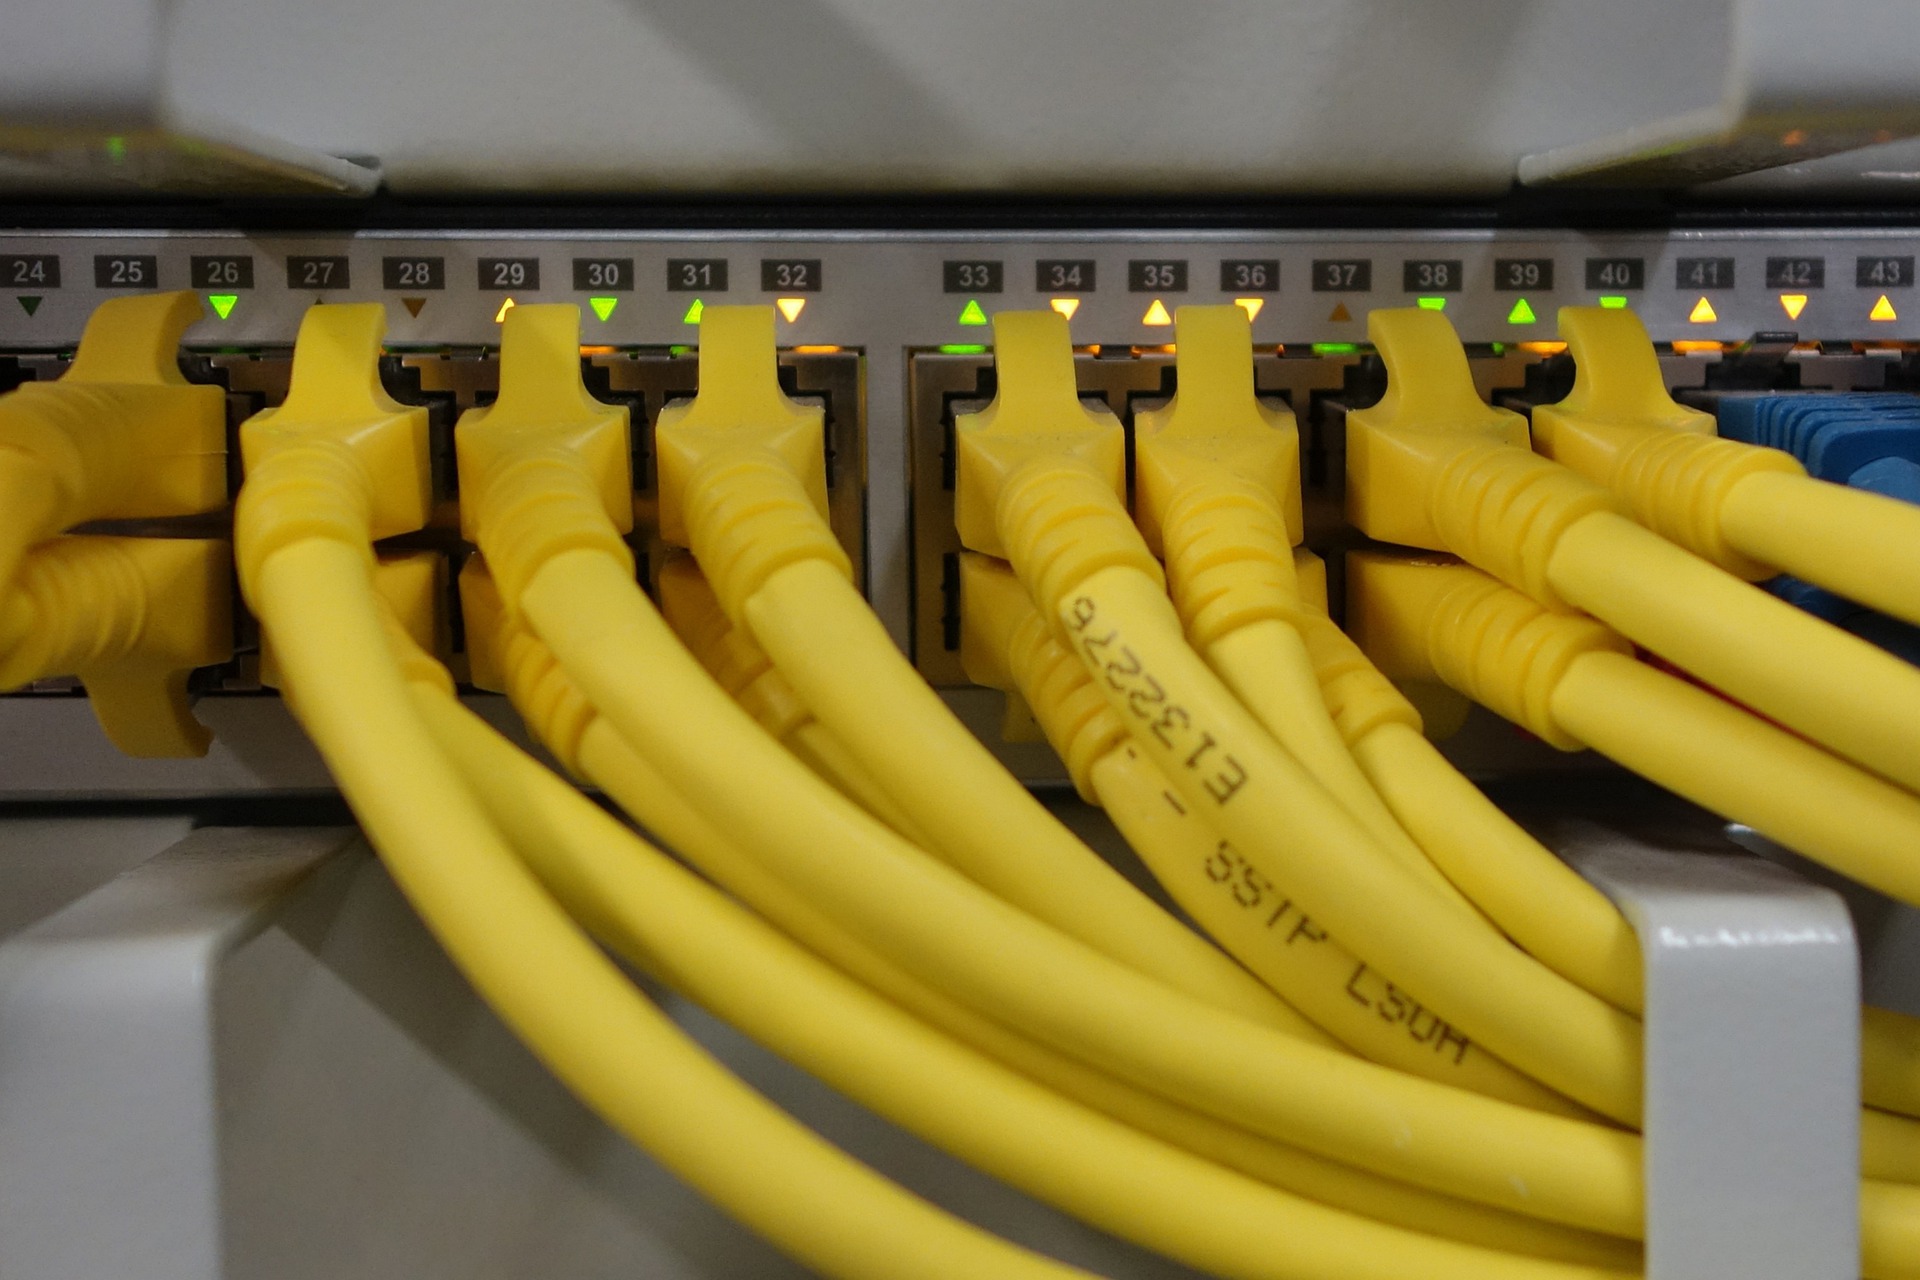 PC yellow cables technologie digitization procurement